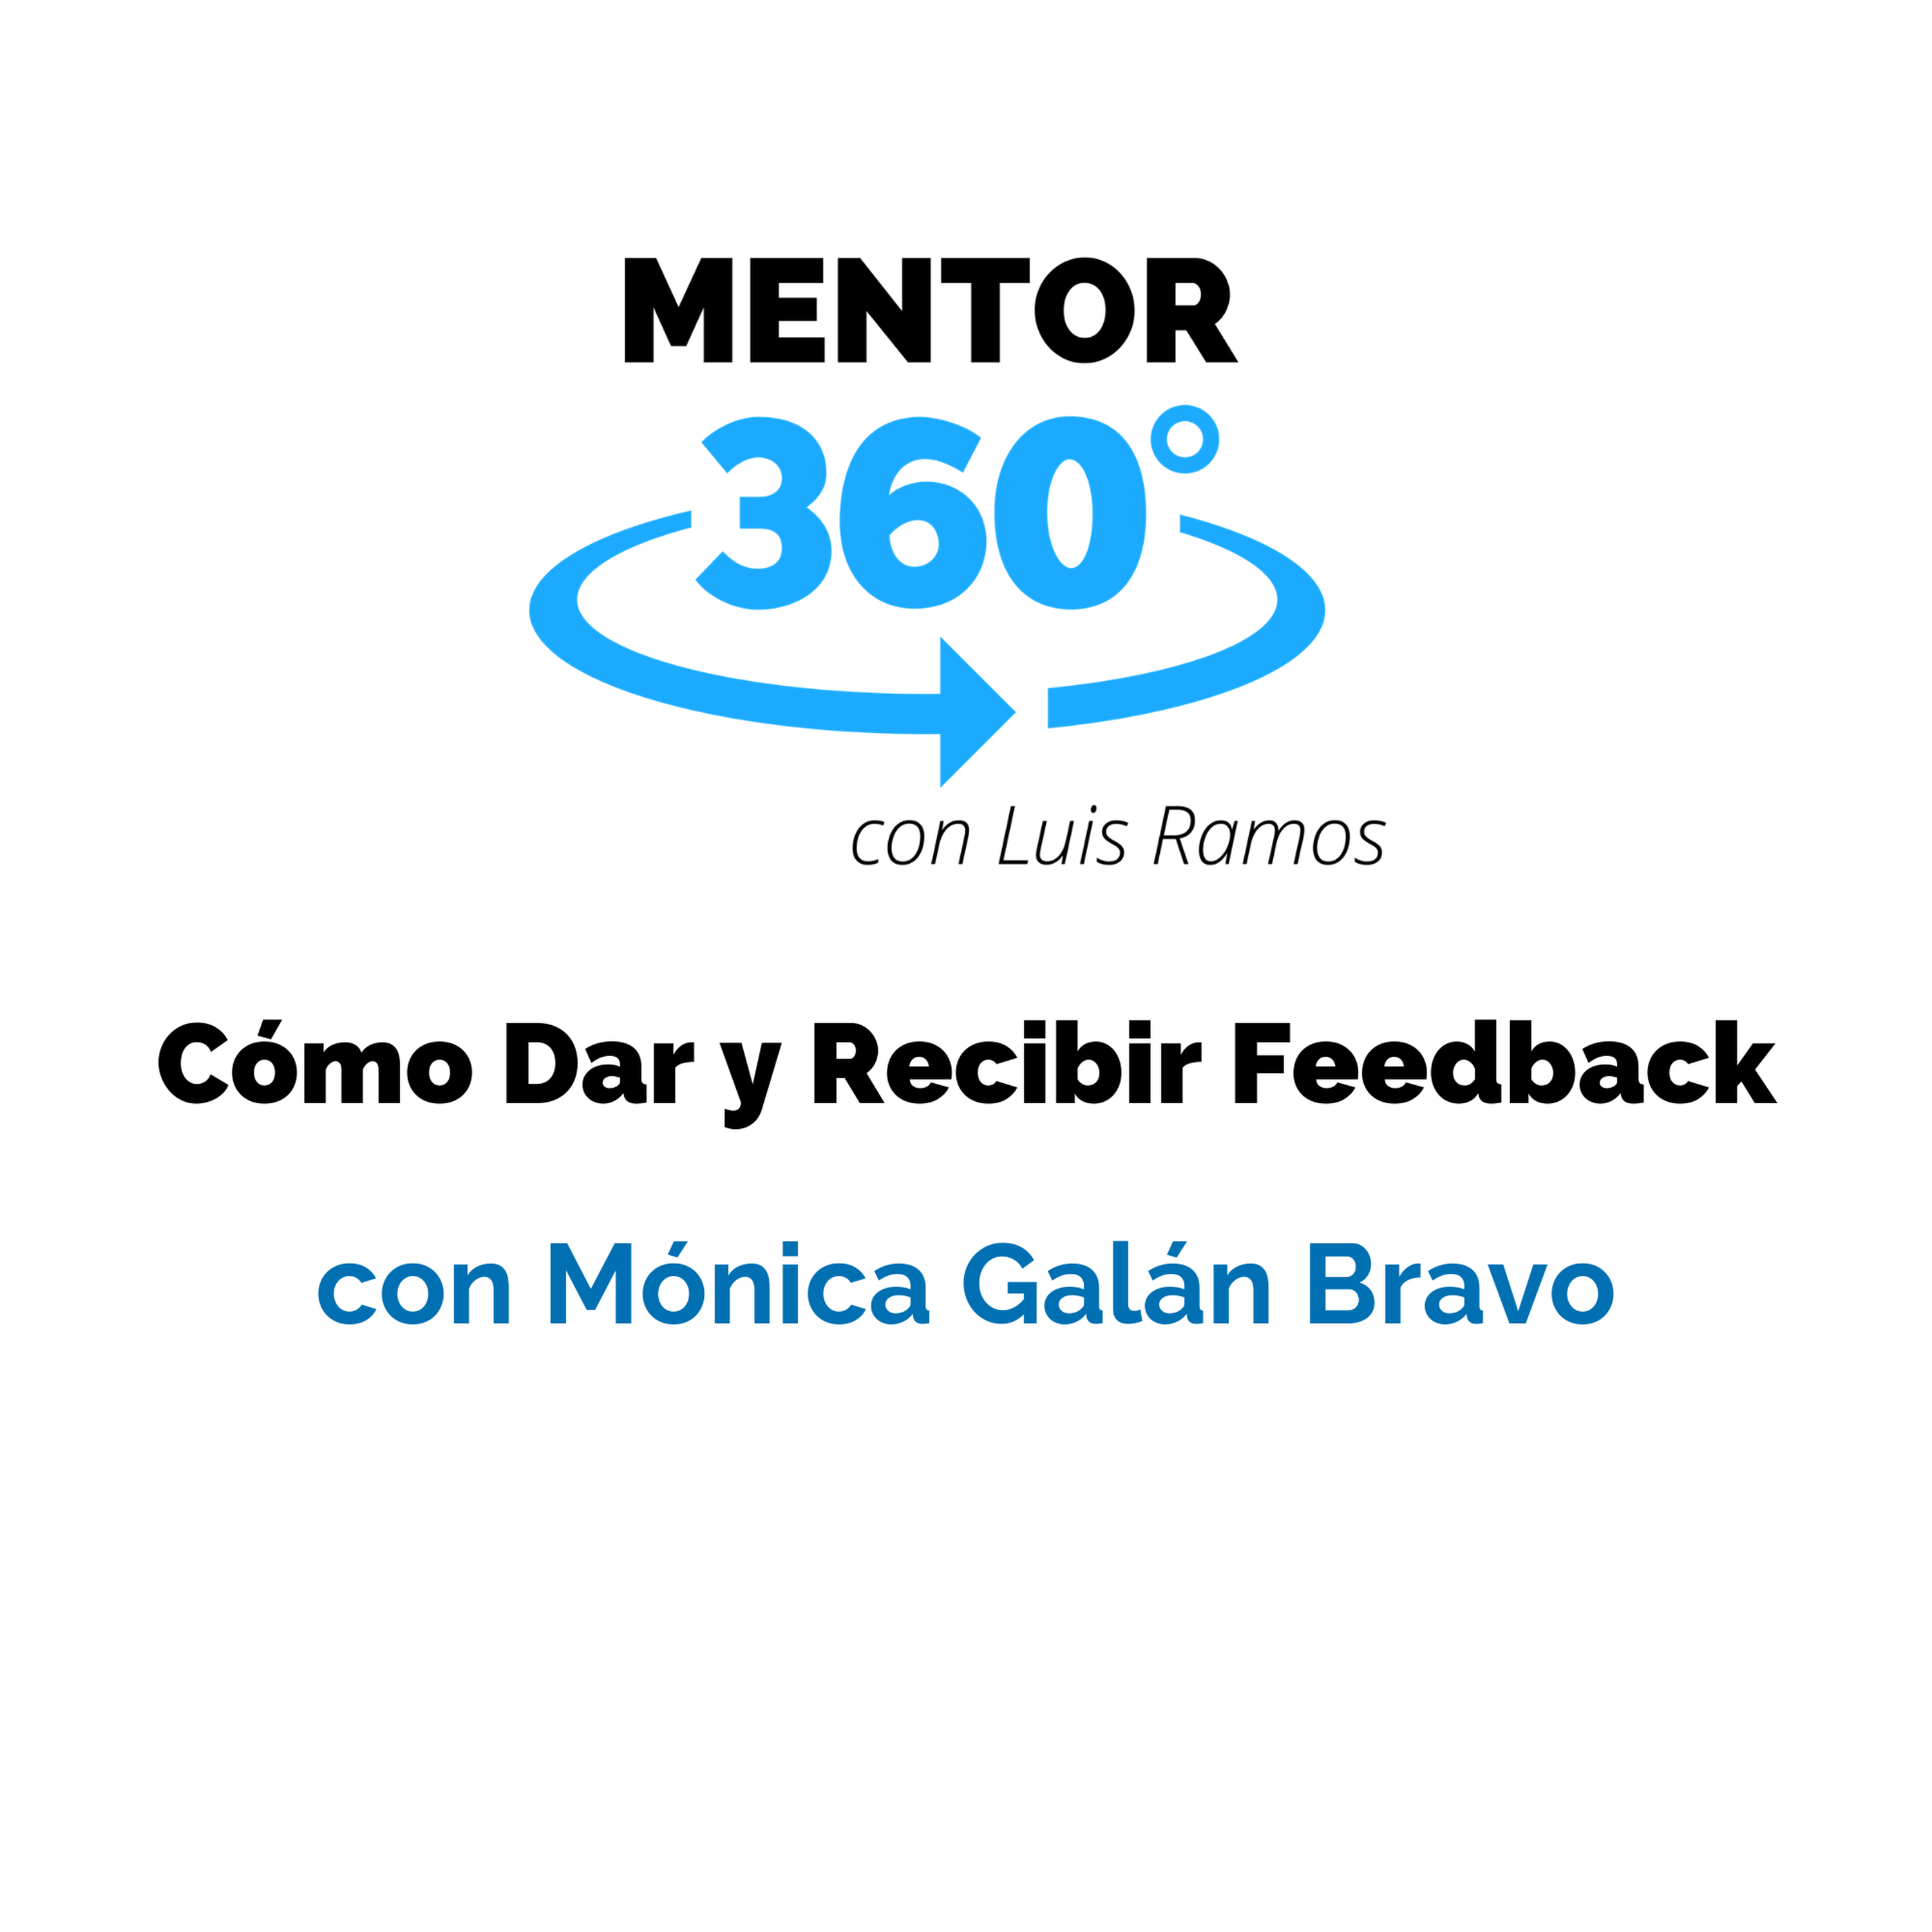 Cómo Dar y Recibir Feedback, con Mónica Galán Bravo - Comunicación - MENTOR360